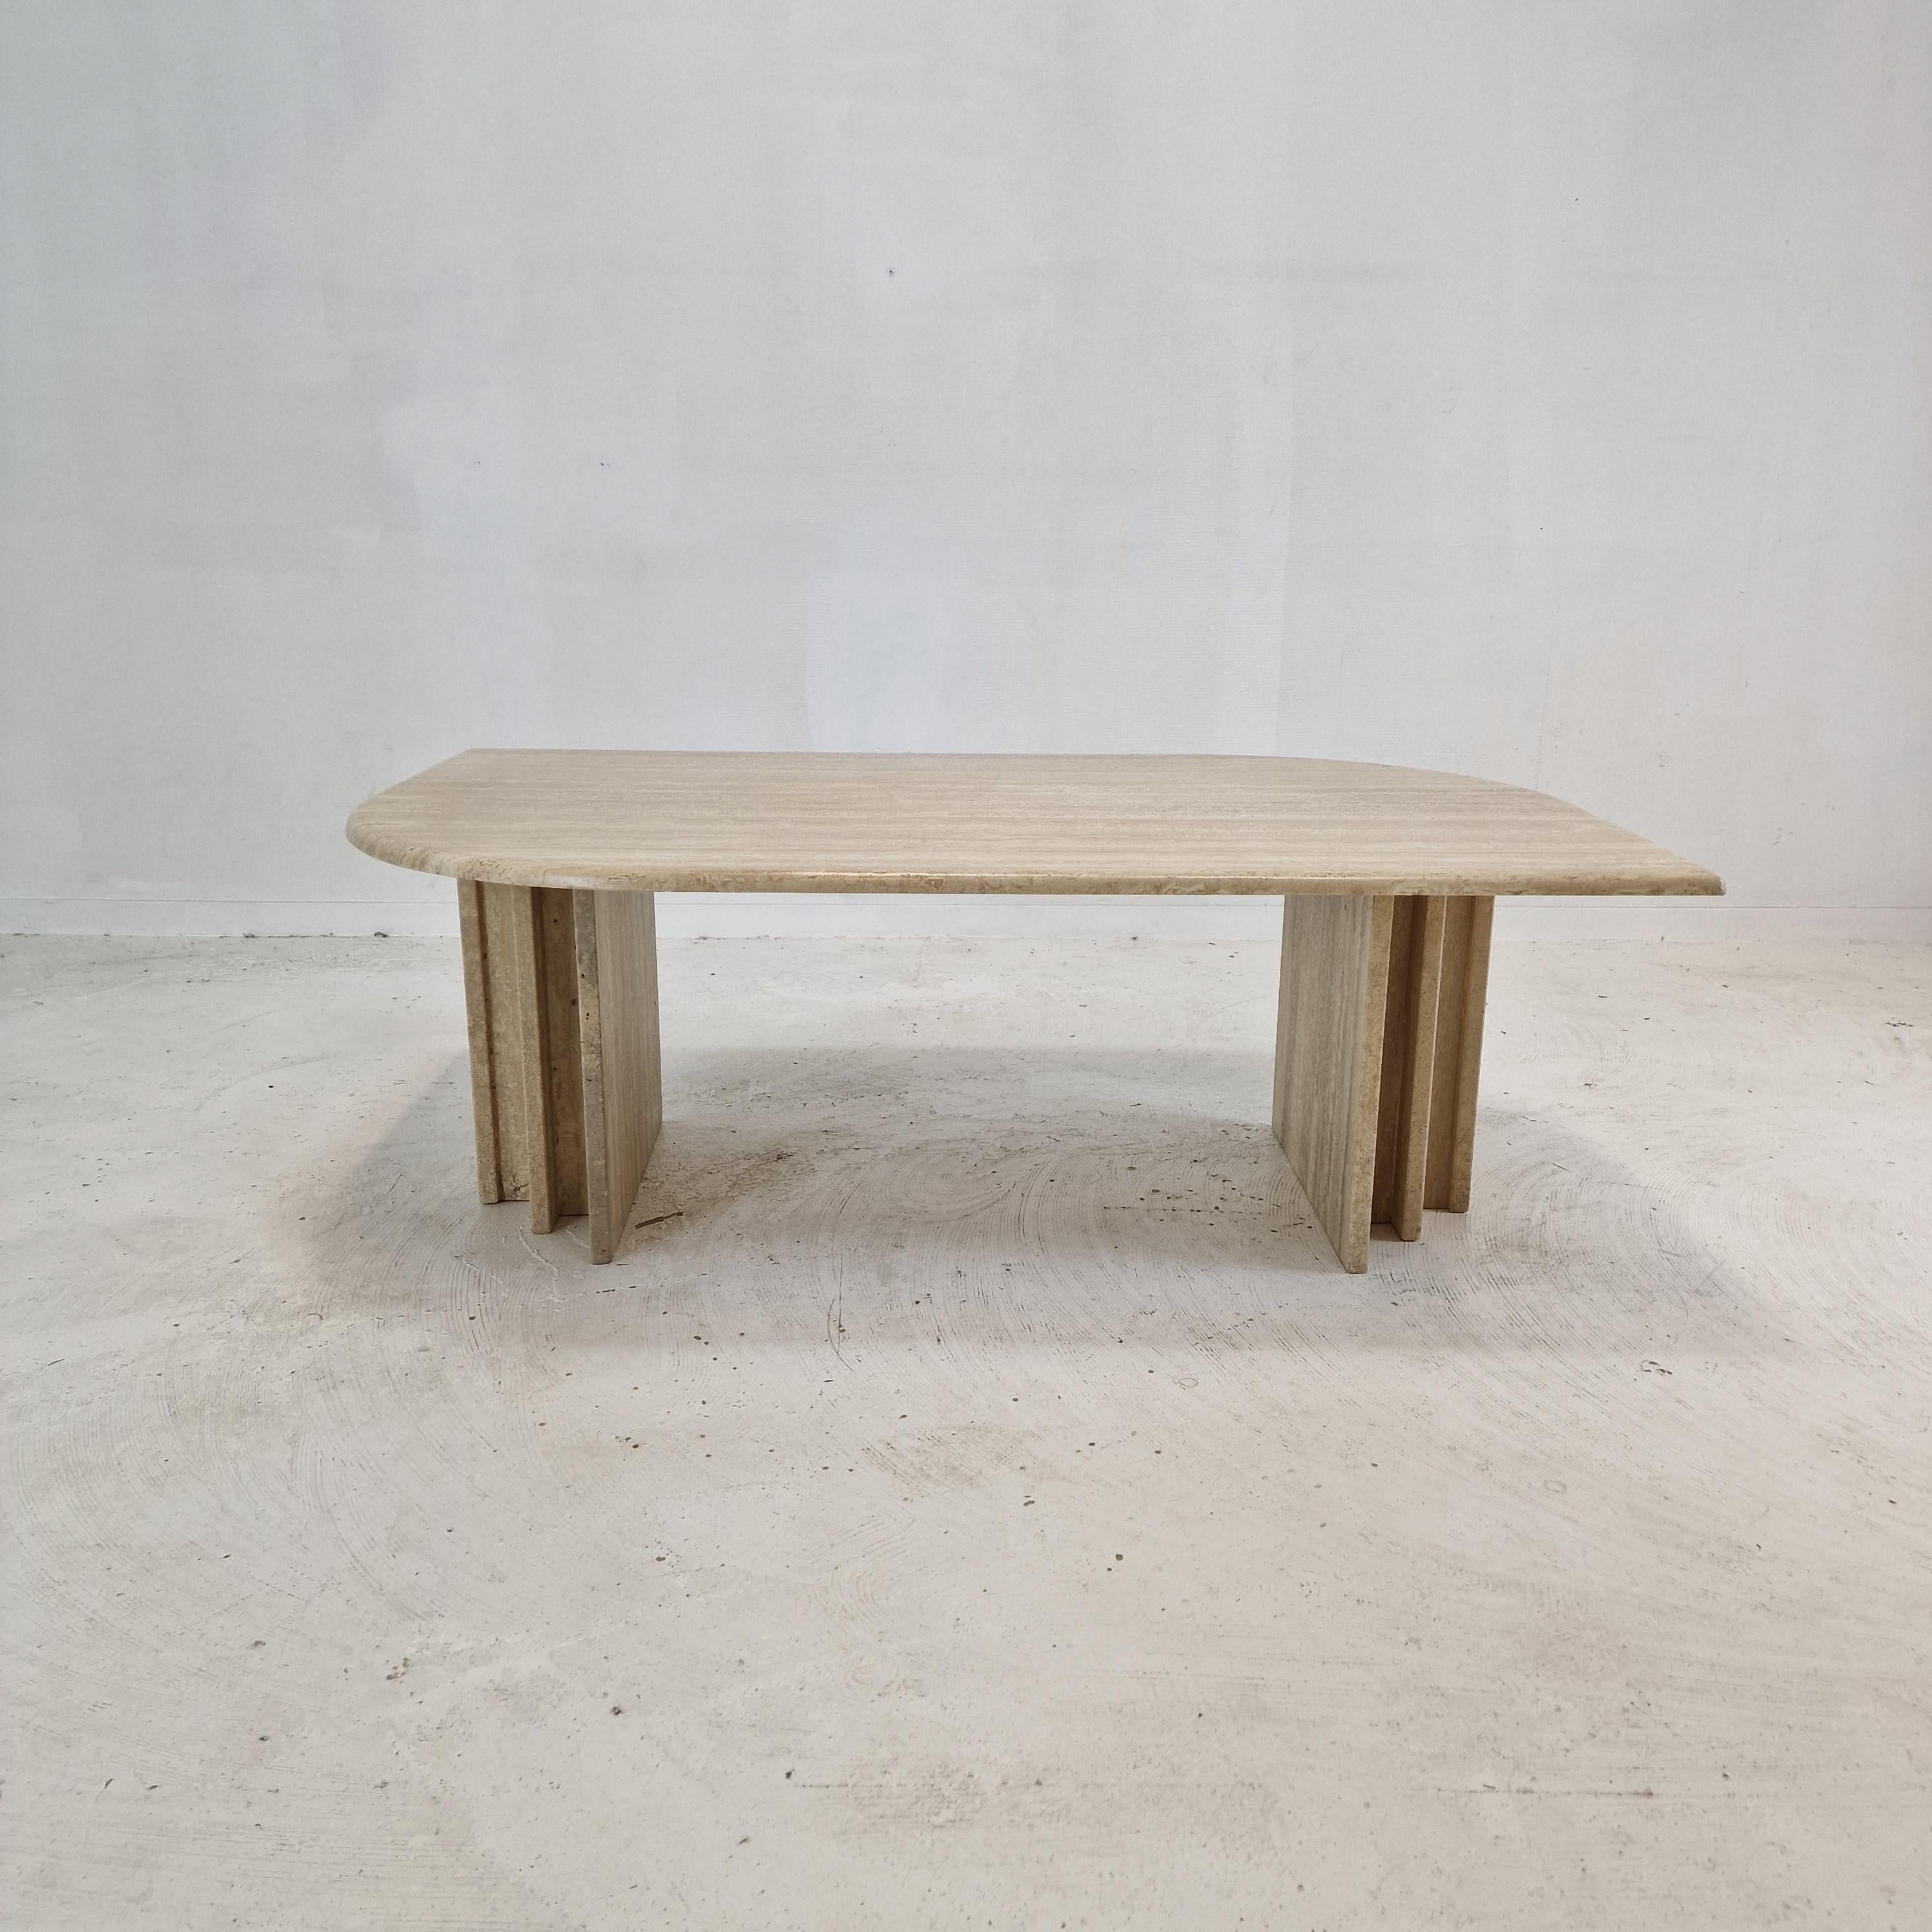 Très élégante table basse italienne fabriquée à la main en travertin.

Le magnifique plateau en forme de rectangle est arrondi sur le bord. 
Il est fait d'un magnifique travertin.

La base est composée de deux pièces séparées, il est possible de